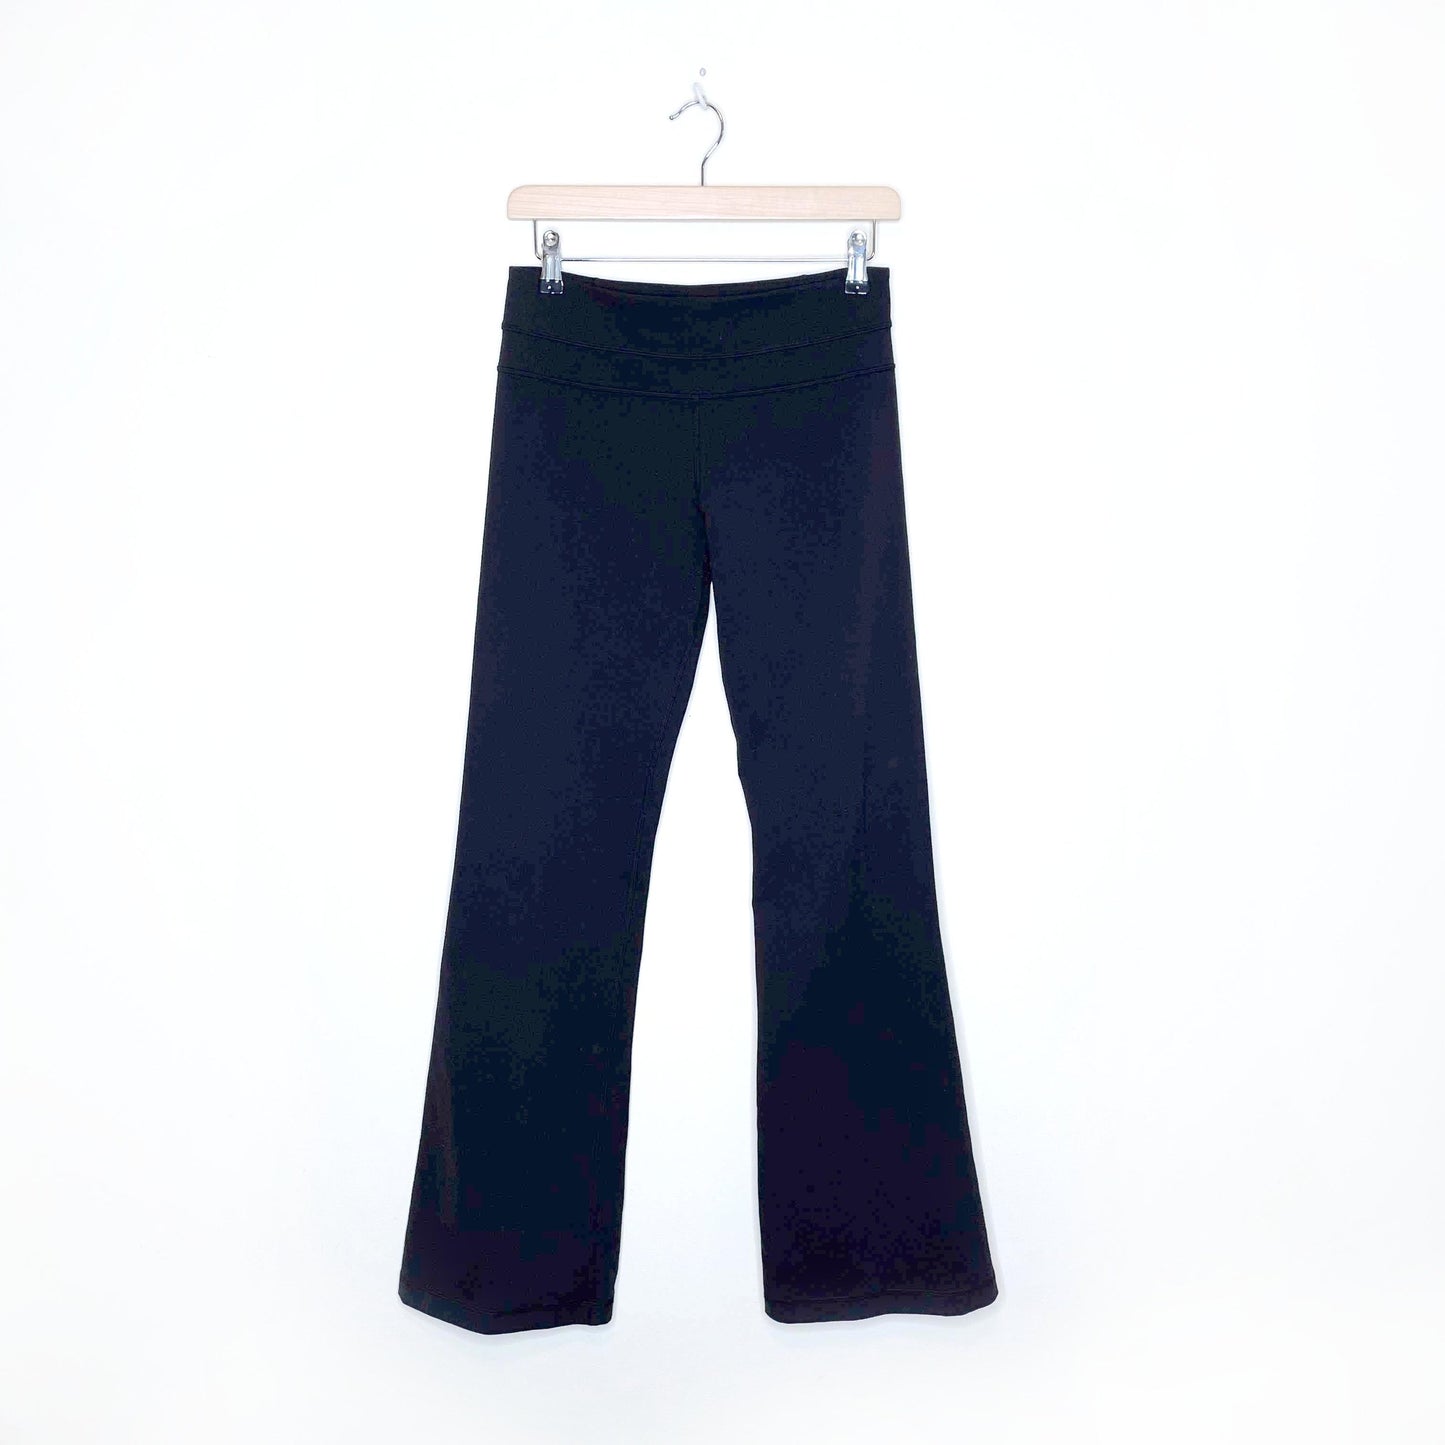 lululemon black groove pants - size 6